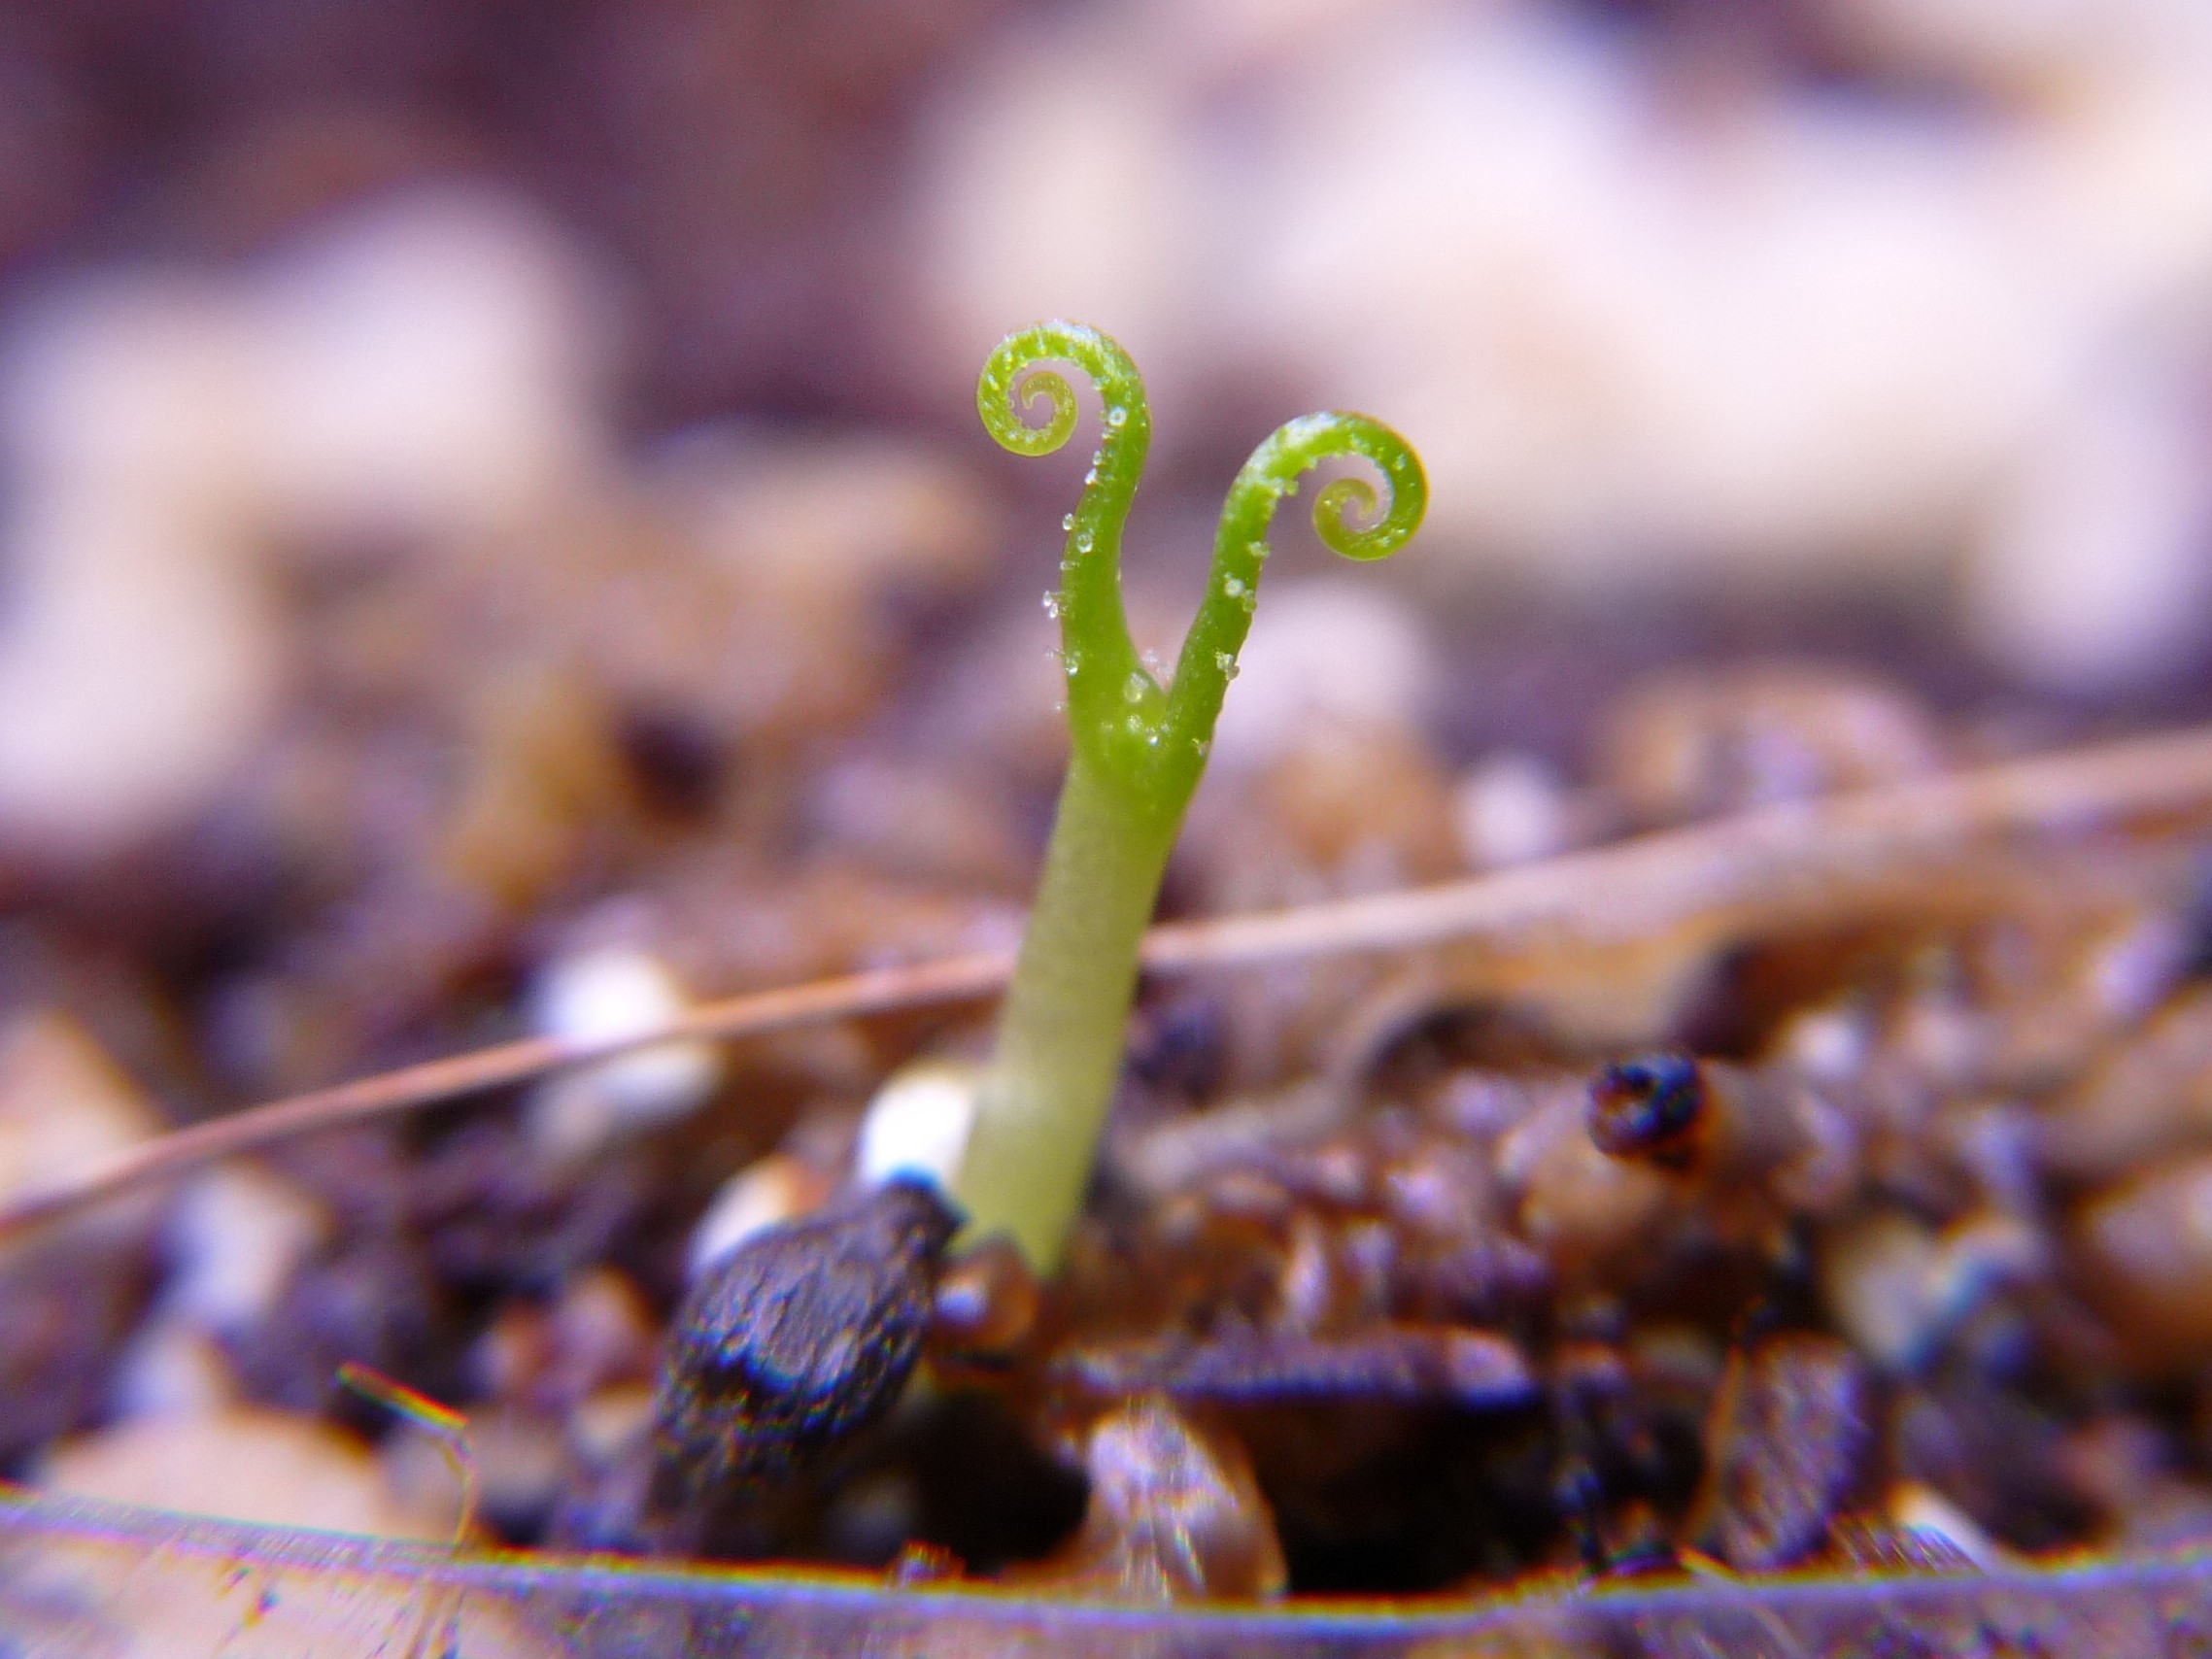 Drosophyllum lusitanicum kiełkuje